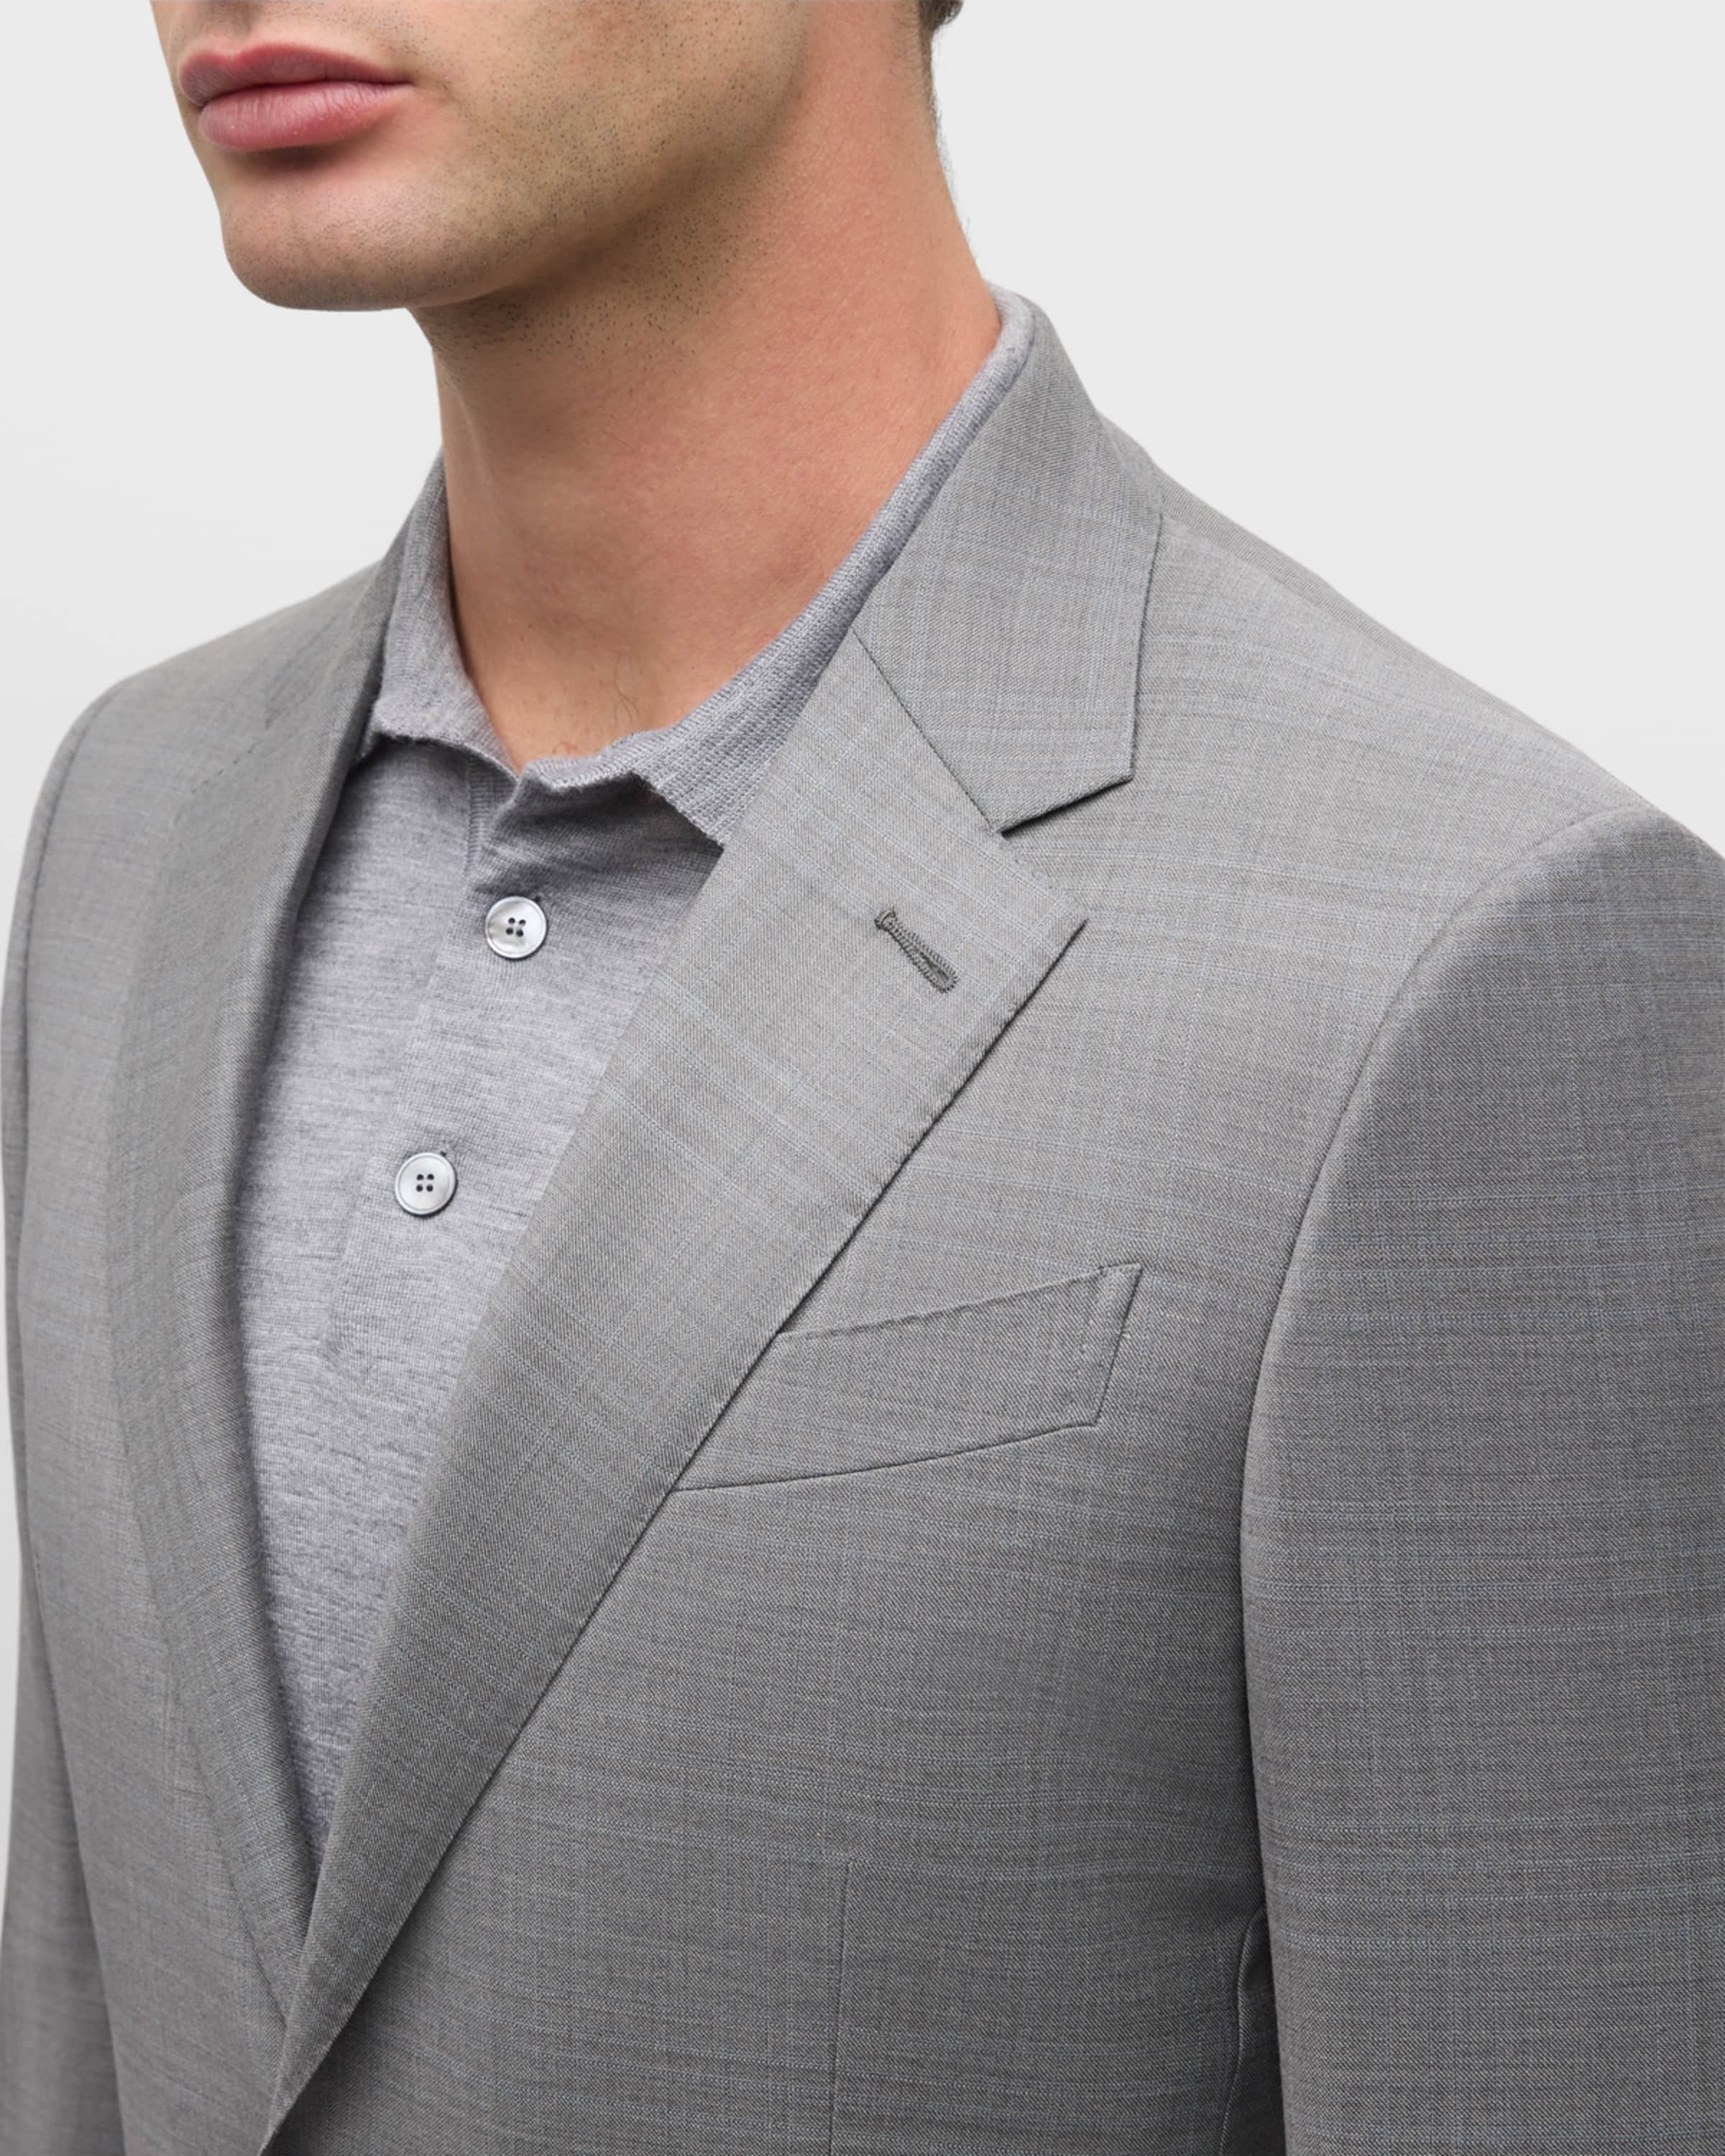 Men's Plaid Wool Suit - 2